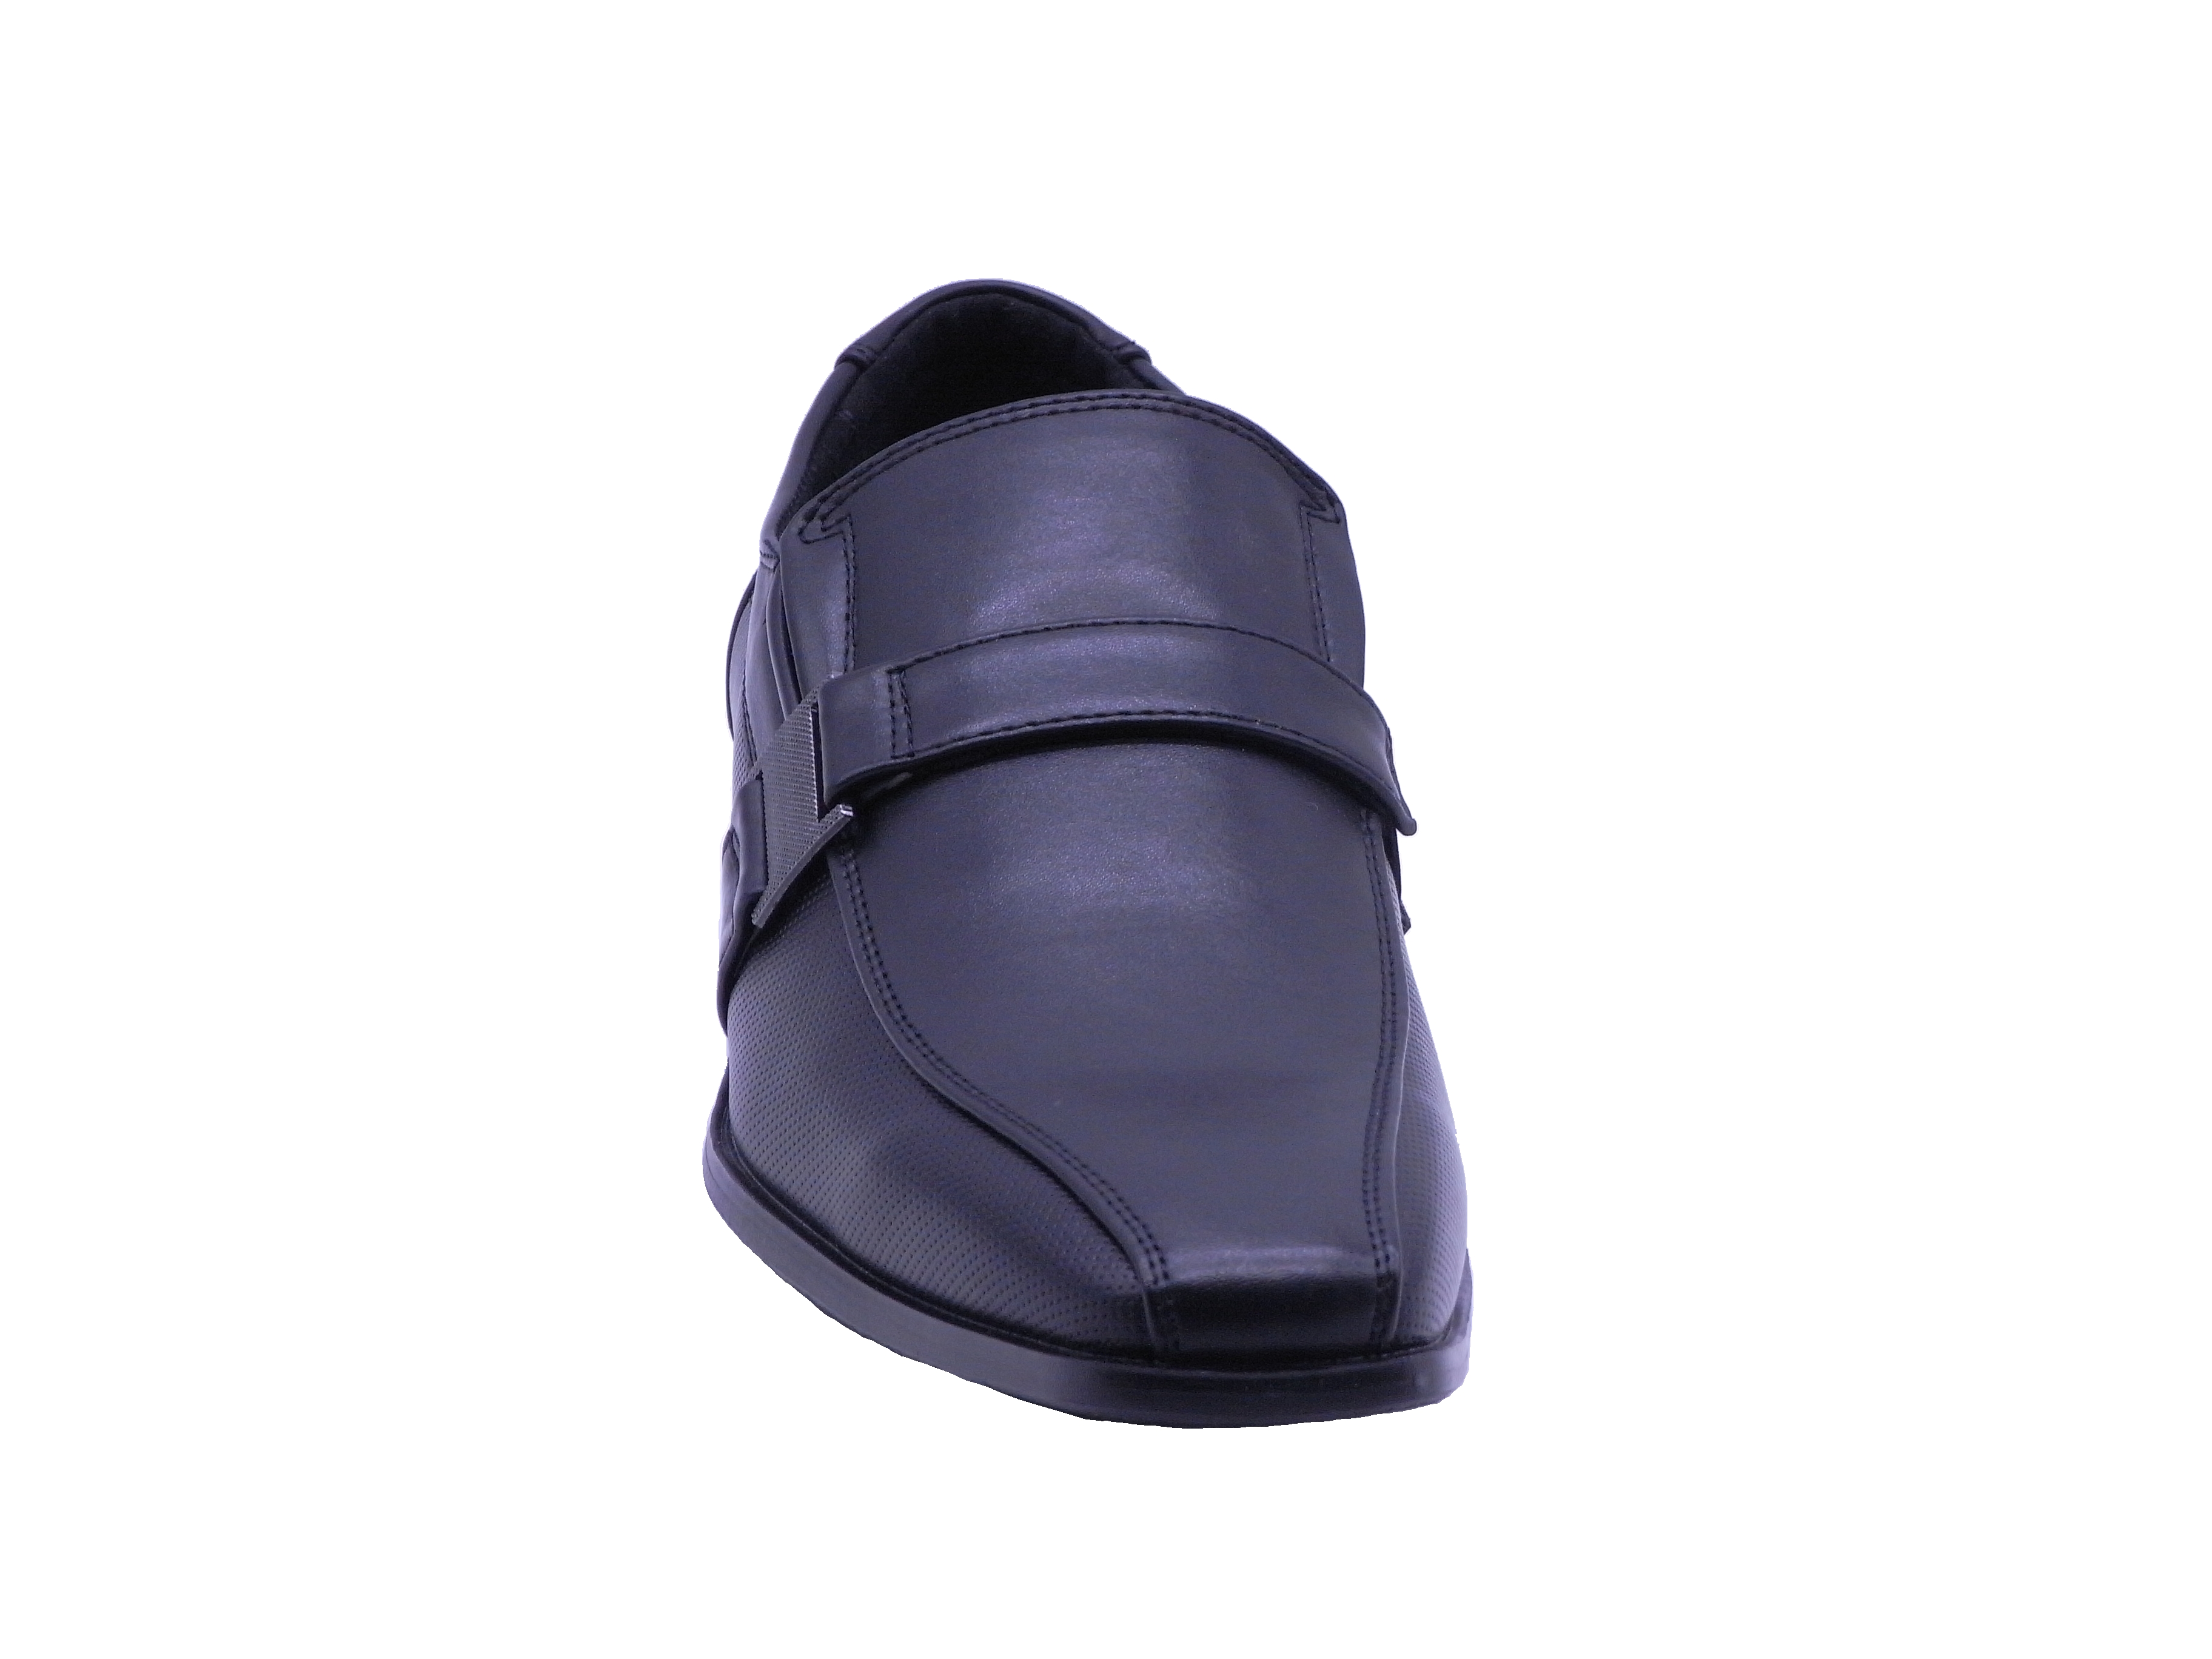 Men Shoes Slip On Strap Loafer Black Color Size US8.5 - image 3 of 5